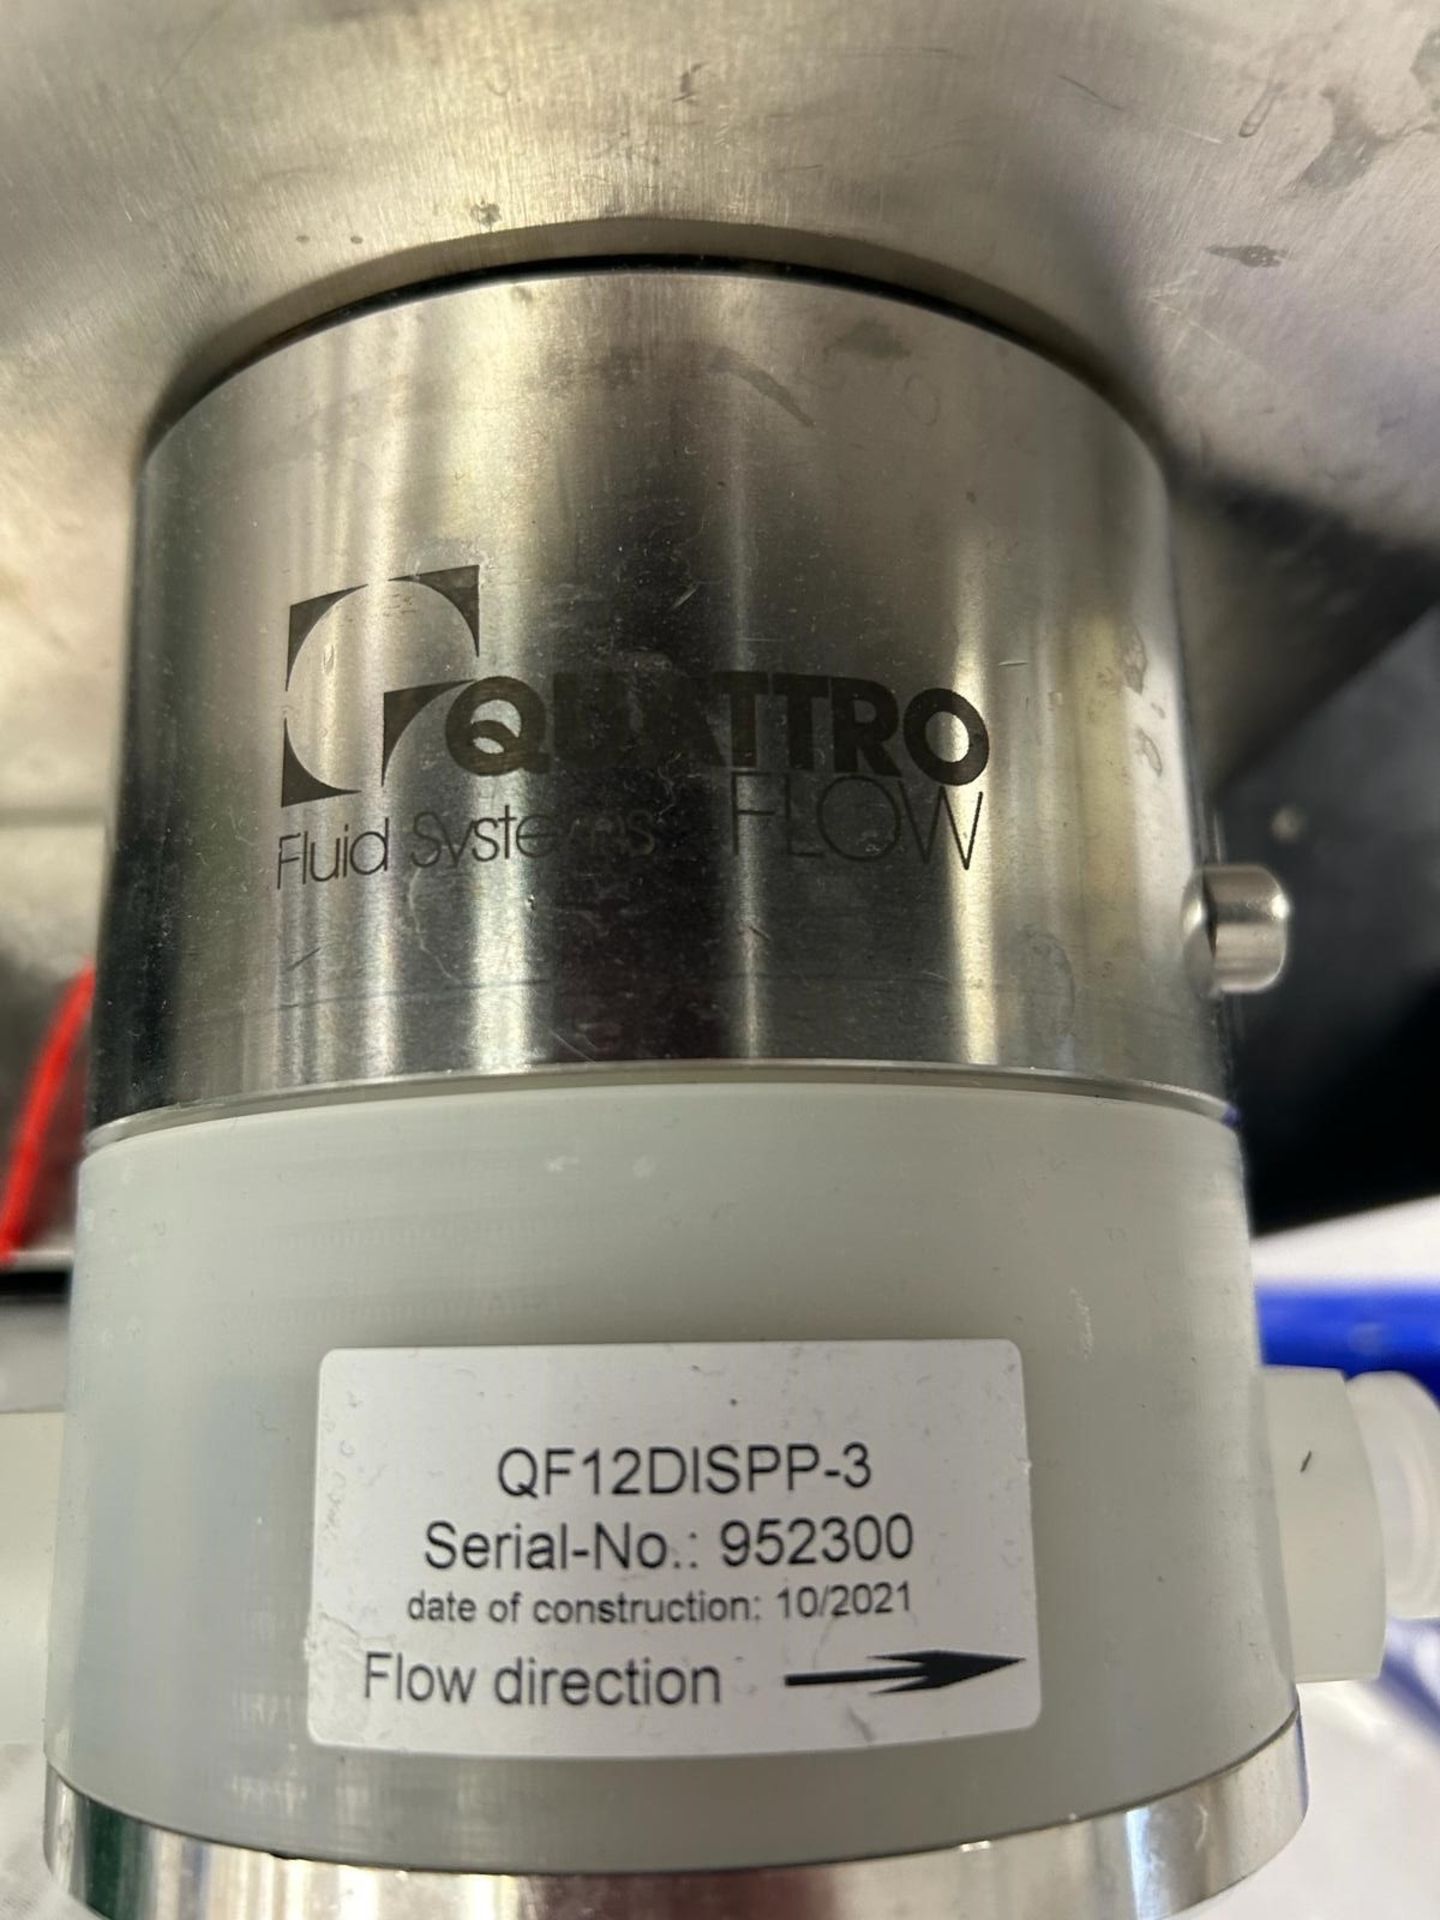 2021 QUATRO FLOW Pump, s/n 952300 - Image 2 of 2